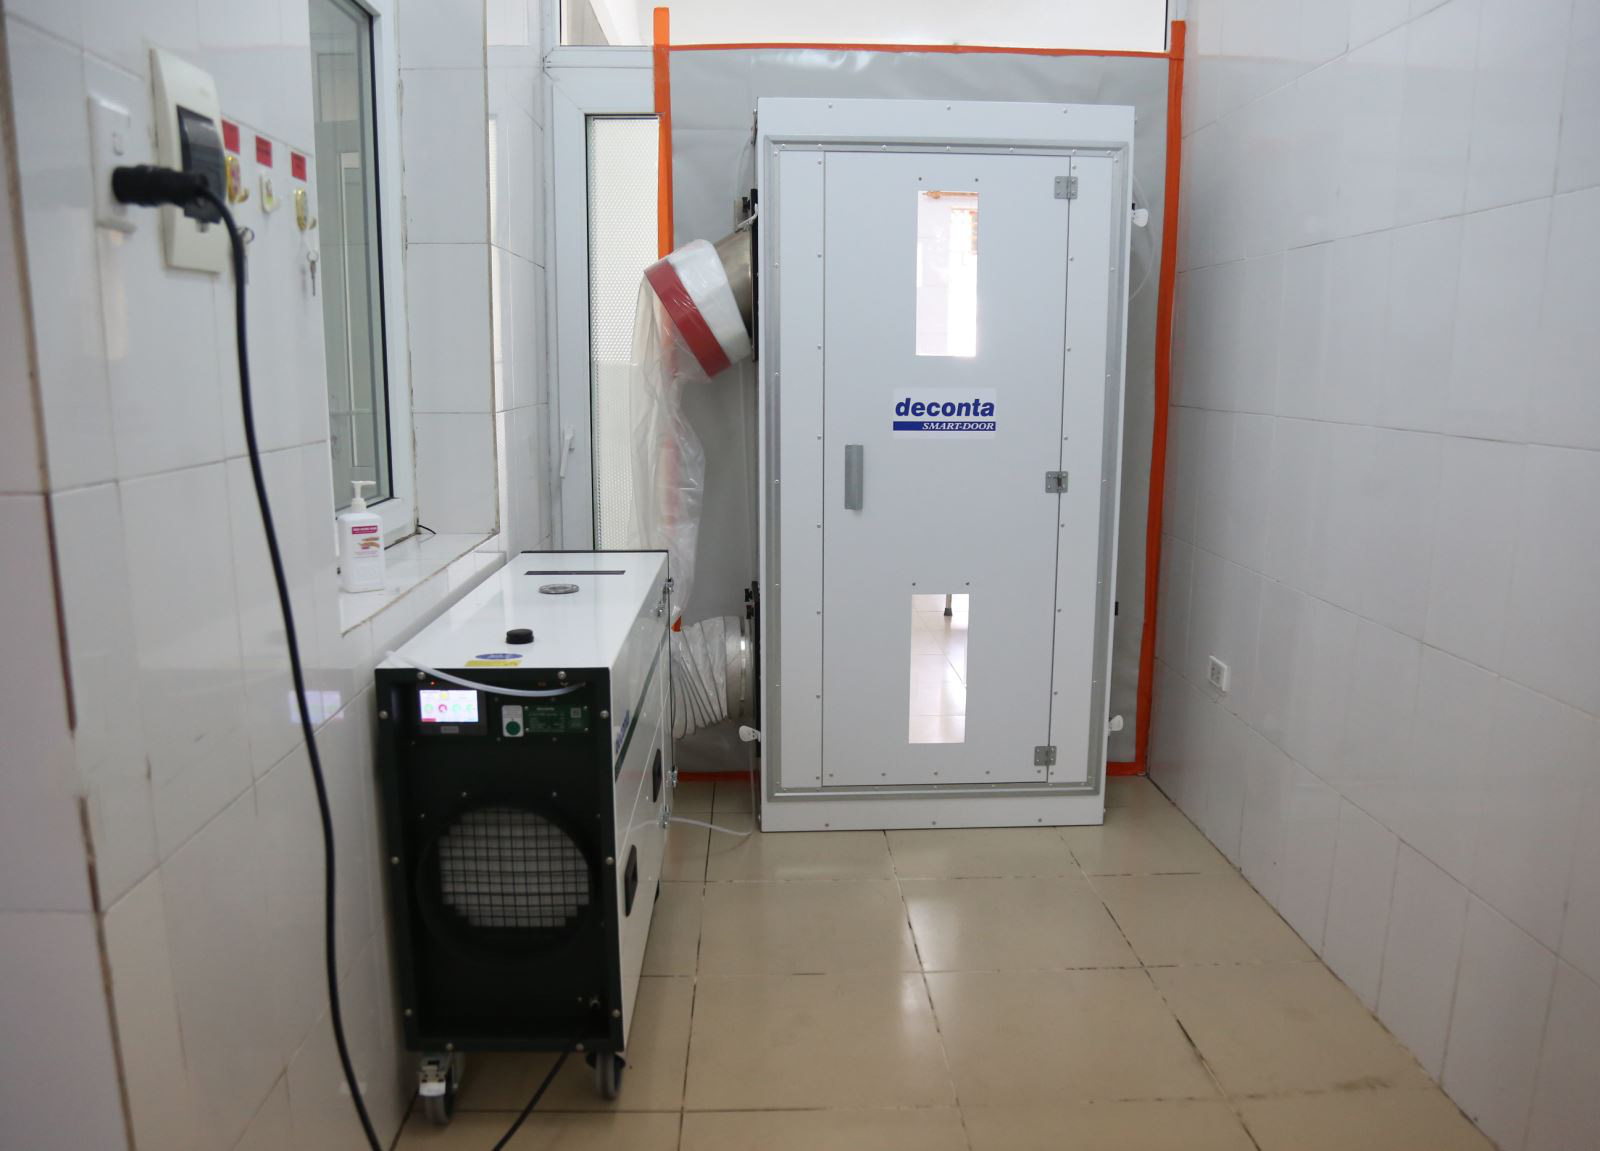 Tập đoàn Tuần Châu tặng Quảng Ninh 2 phòng cách ly áp lực âm - Ảnh 2.